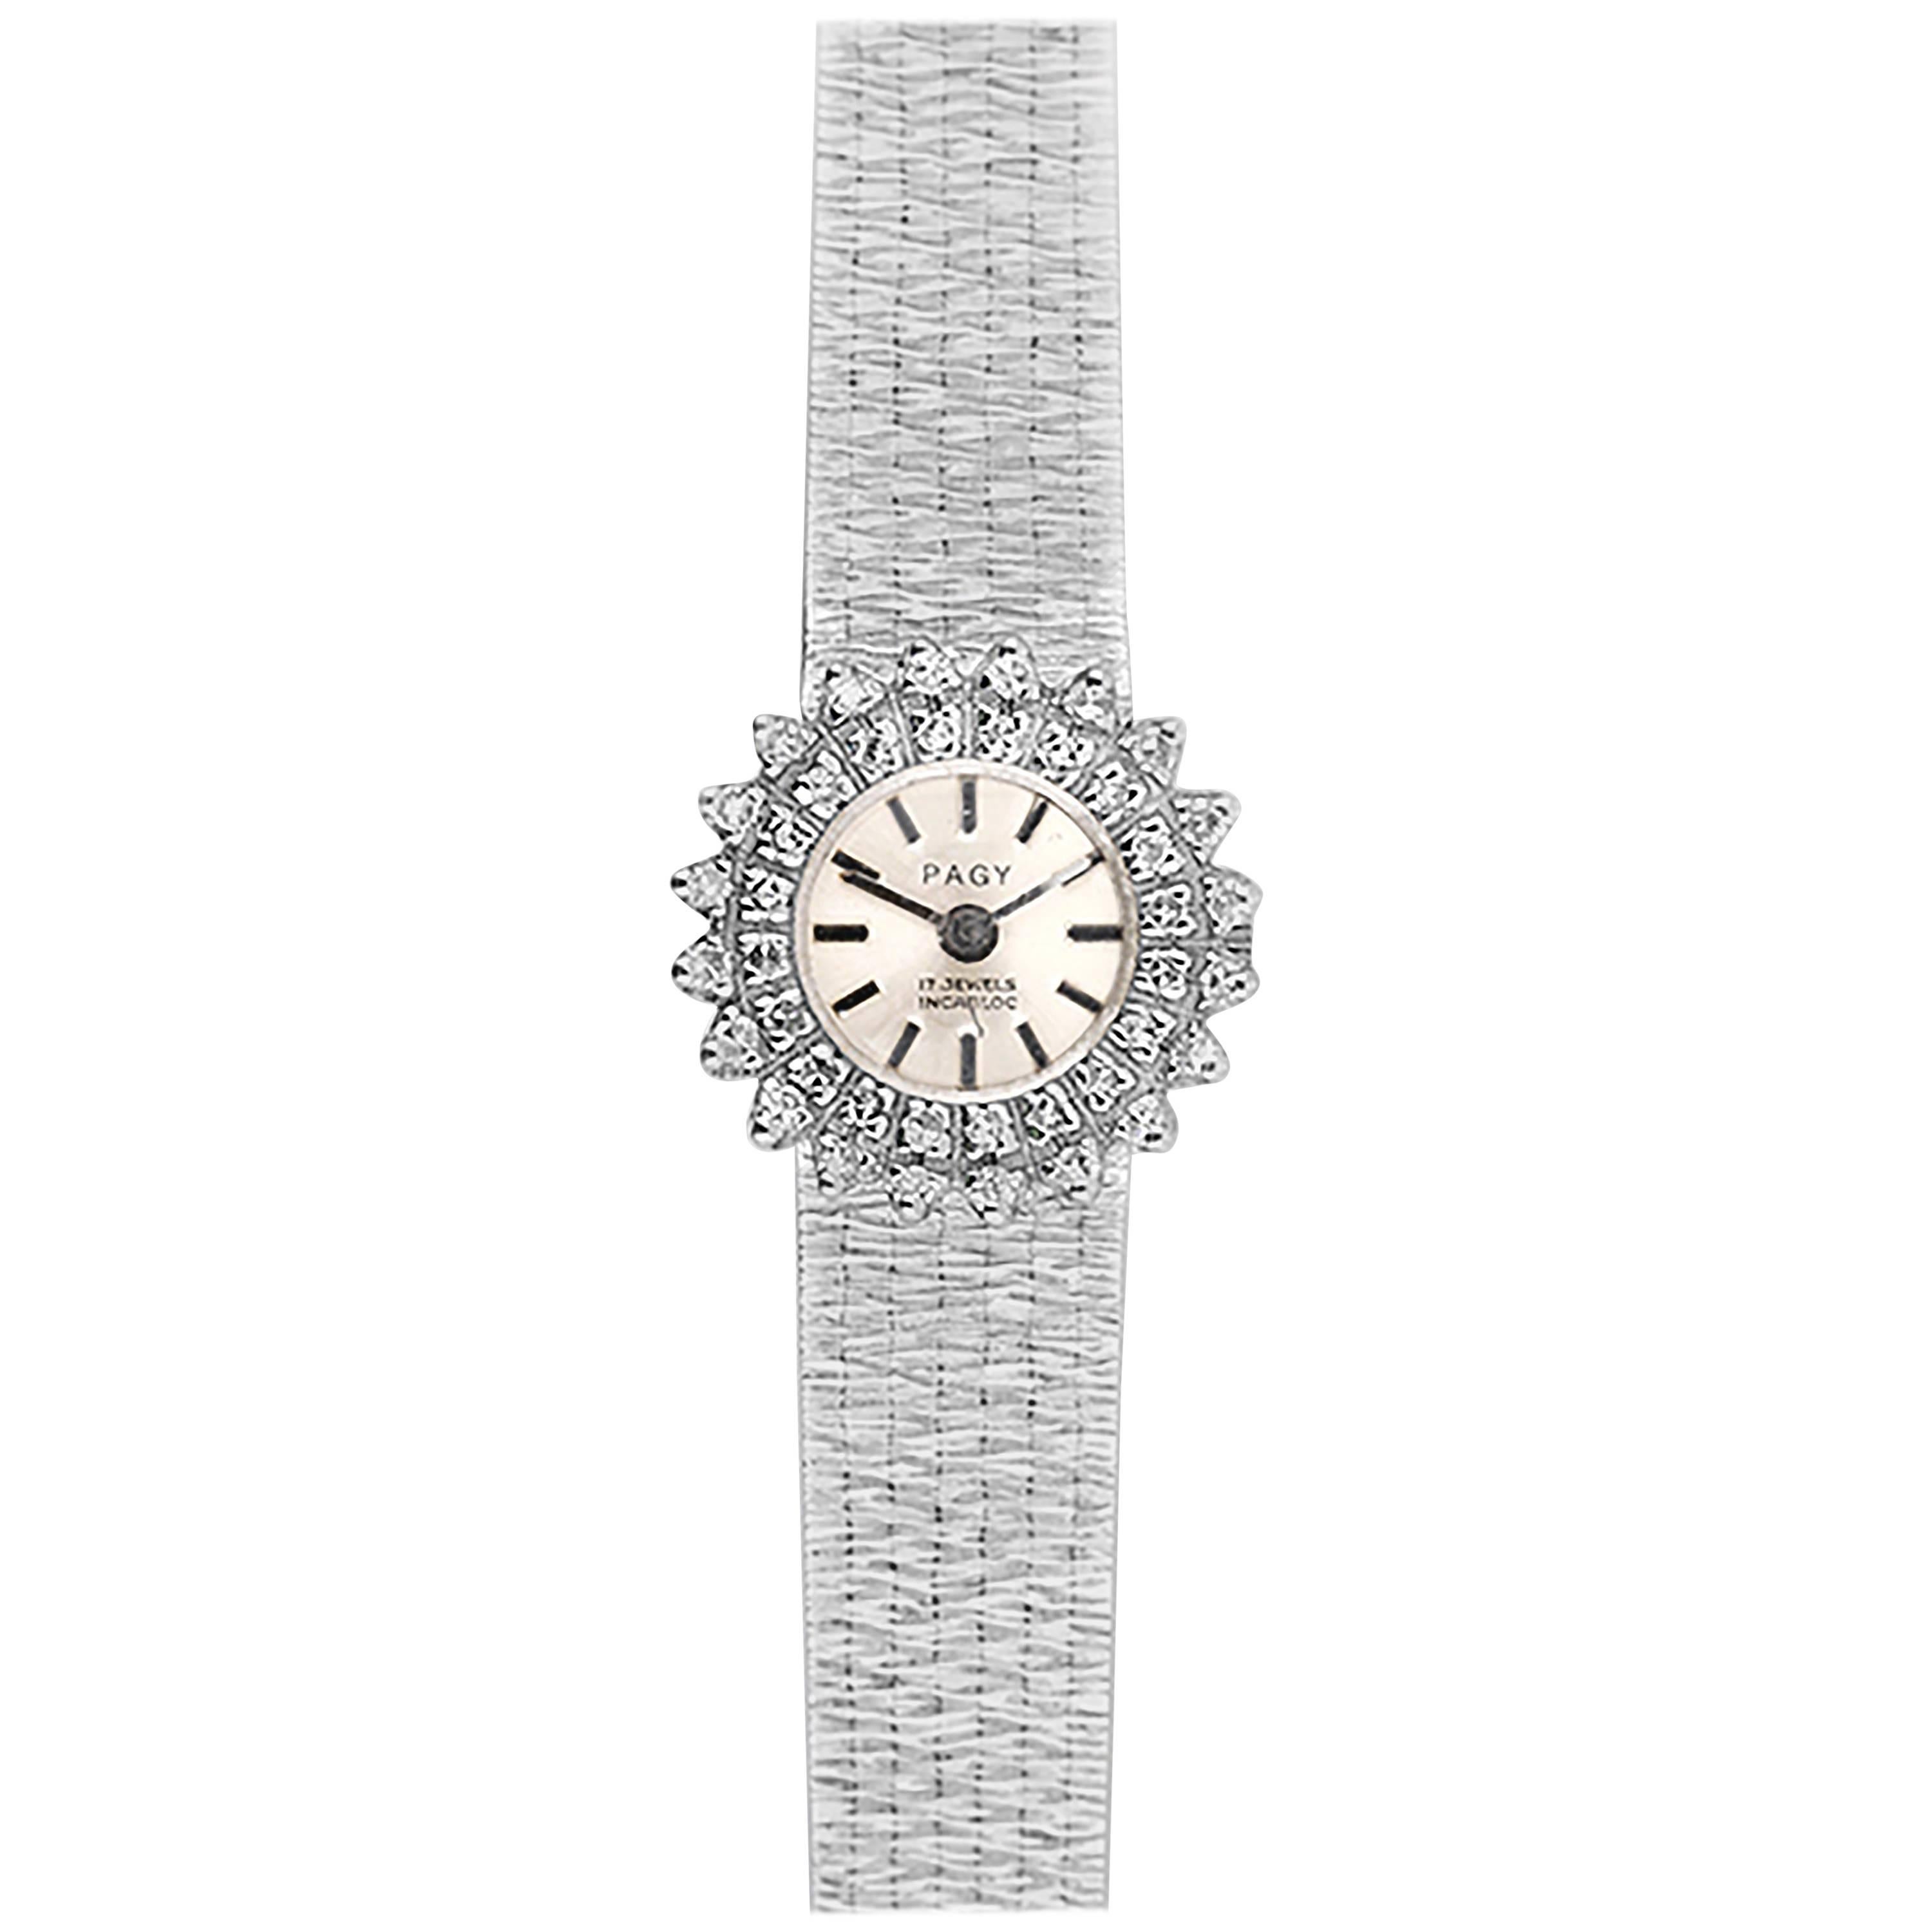 Pagy Ladies White Gold Diamond Manual Wristwatch 1960s 